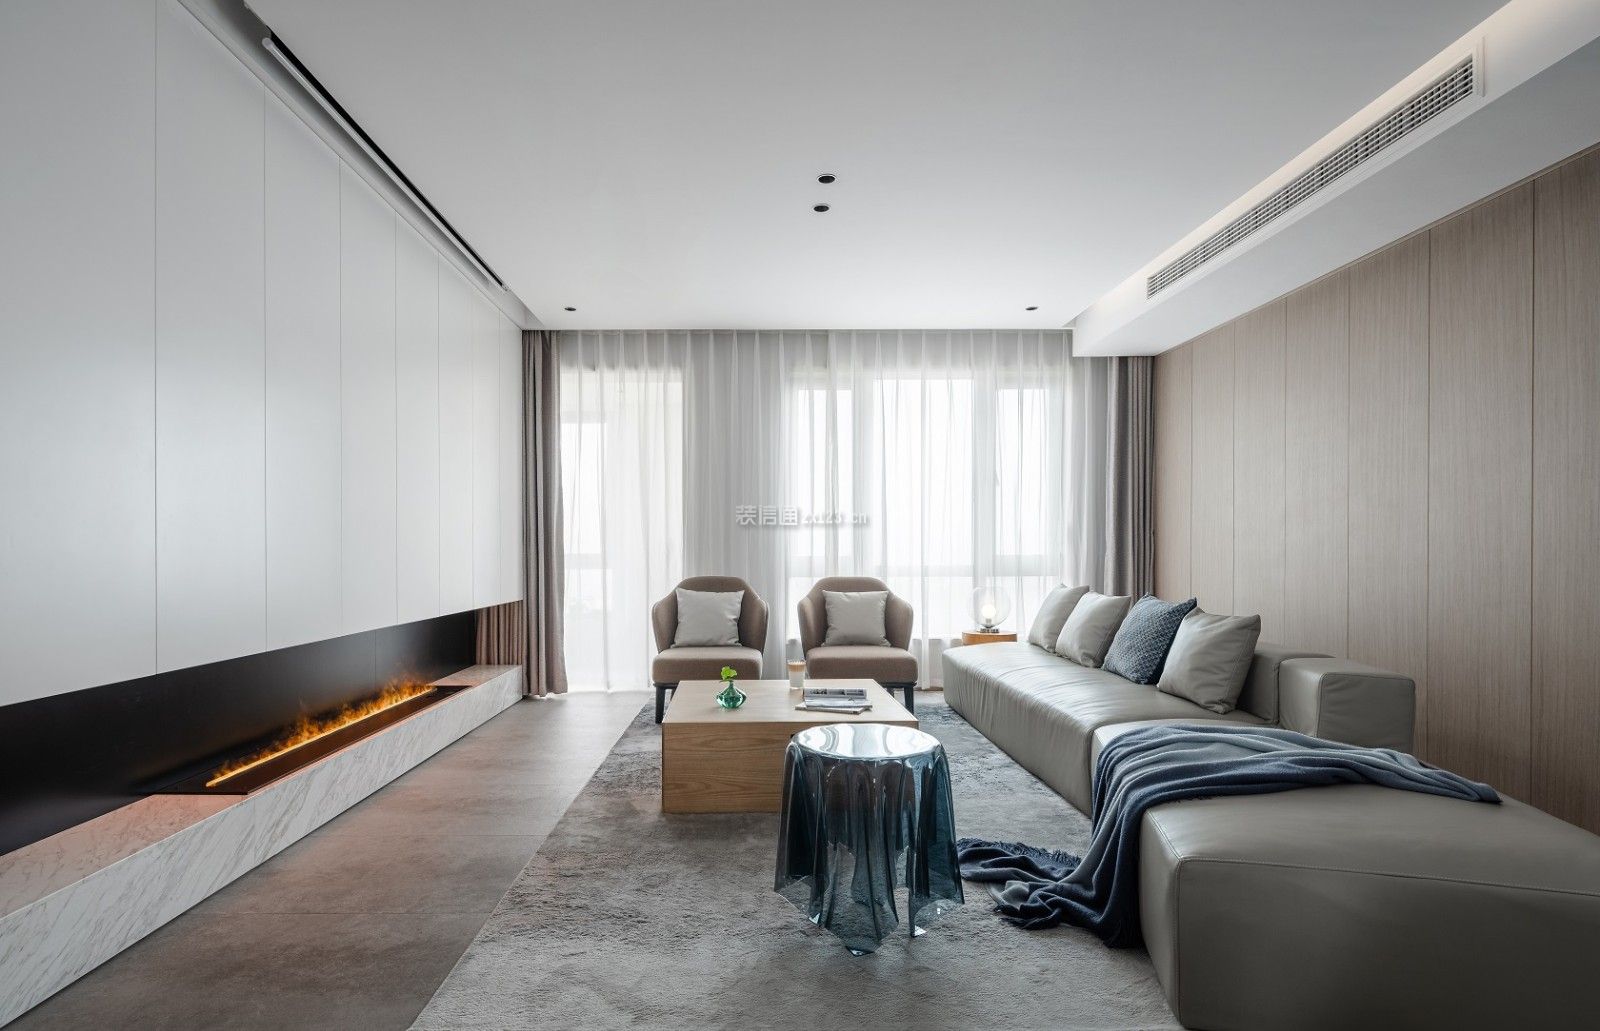 现代客厅家具效果图 现代客厅装修案例 现代客厅茶几效果图